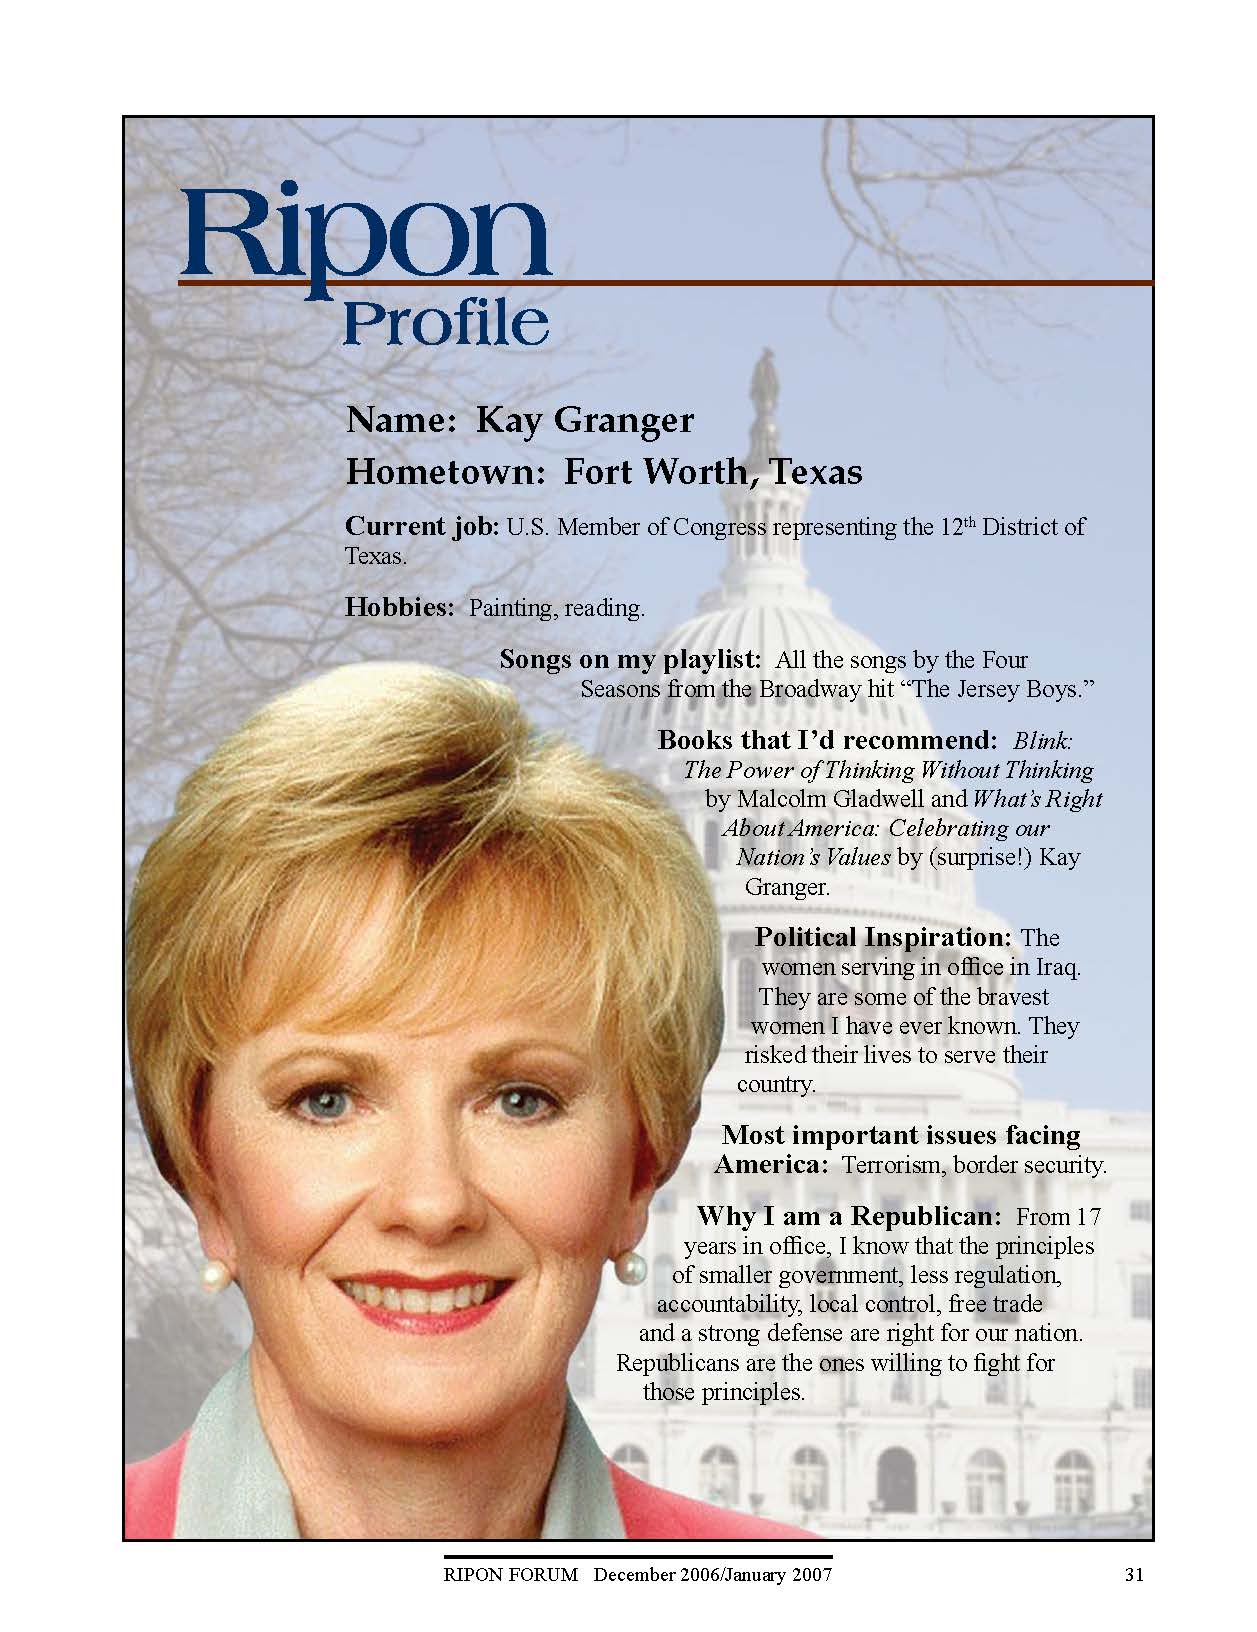 Ripon Profile of Kay Granger